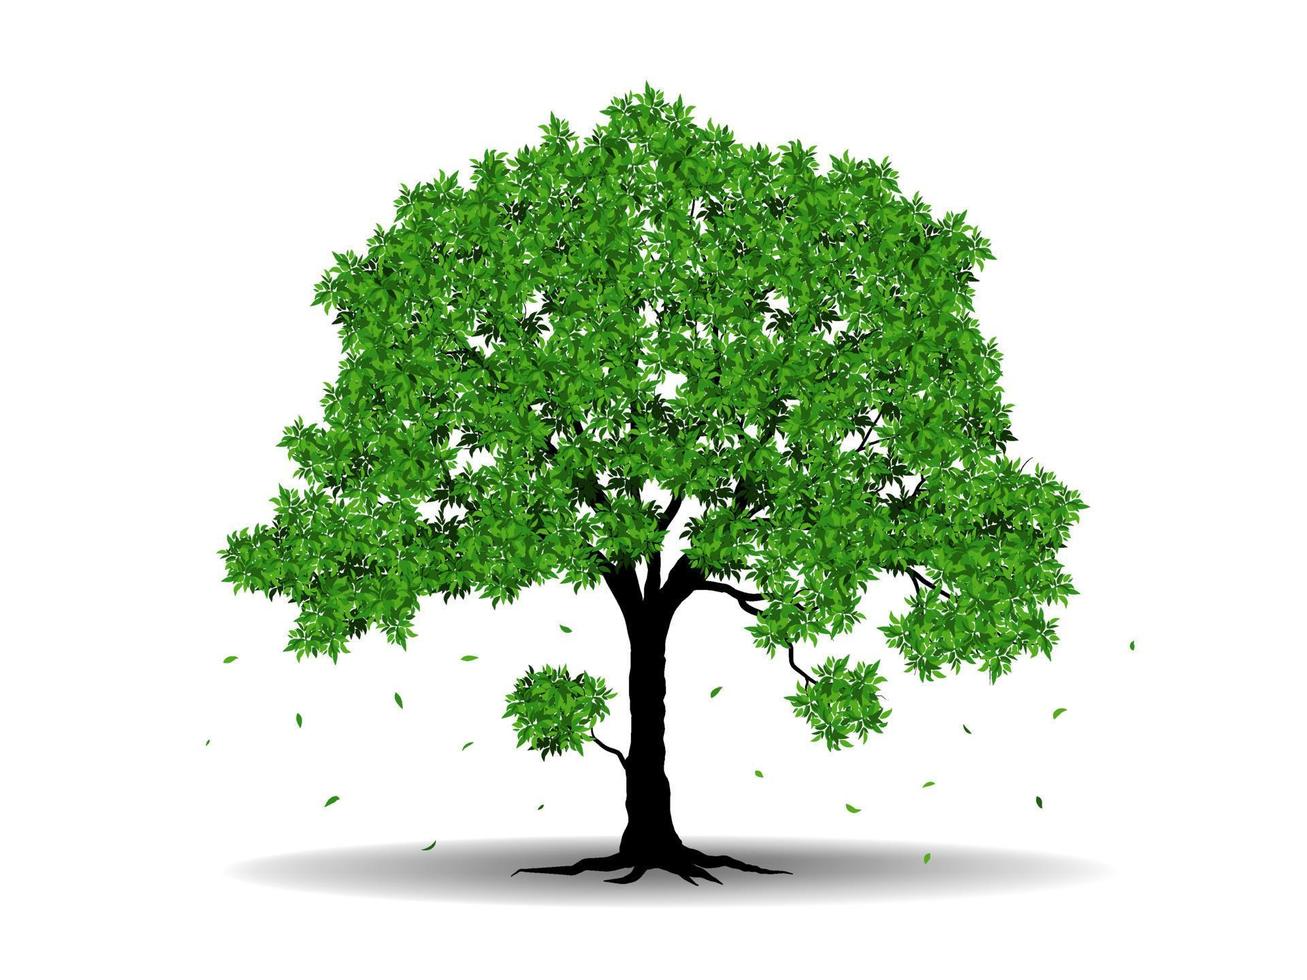 le grand arbre aux feuilles vertes est beau et rafraîchissant. concept de logo arbre et racines. peut être utilisé pour votre travail. vecteur